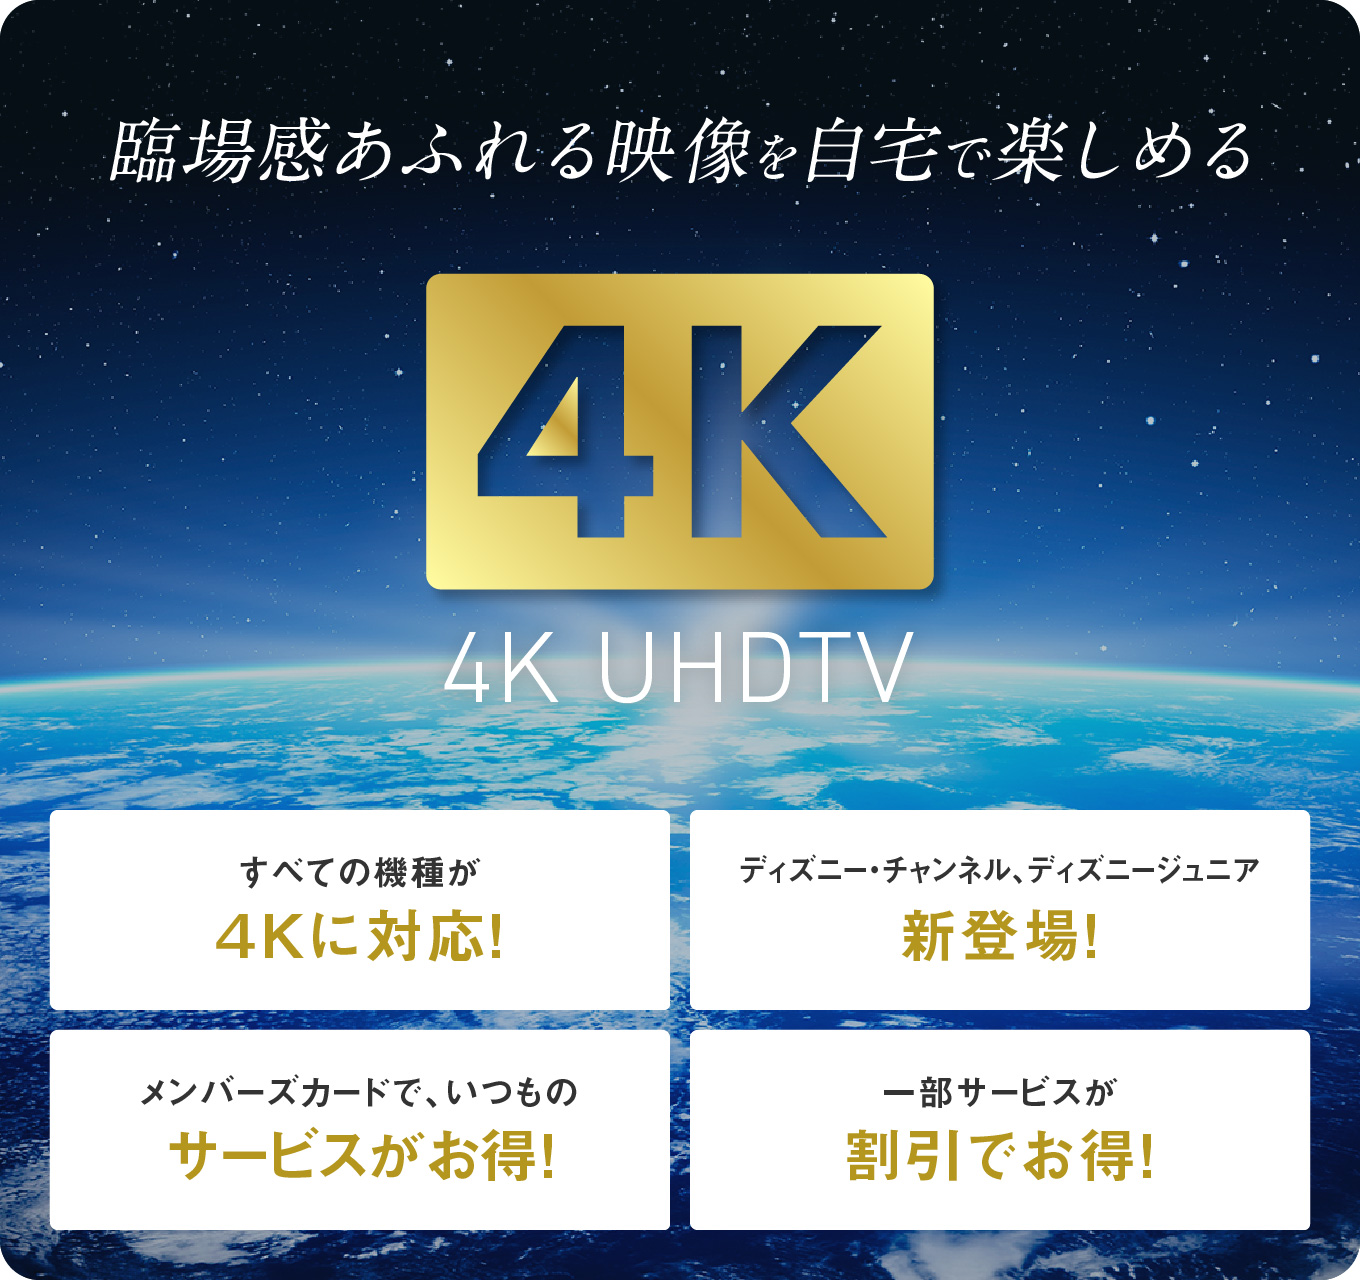 臨場感あふれる映像を自宅で楽しめる 4K UHDTV　すべての機種が4Kに対応！／ディズニー・チャンネル、ディズニージュニア新登場！／メンバーズカードで、いつものサービスがお得！／一部サービスが割引でお得！